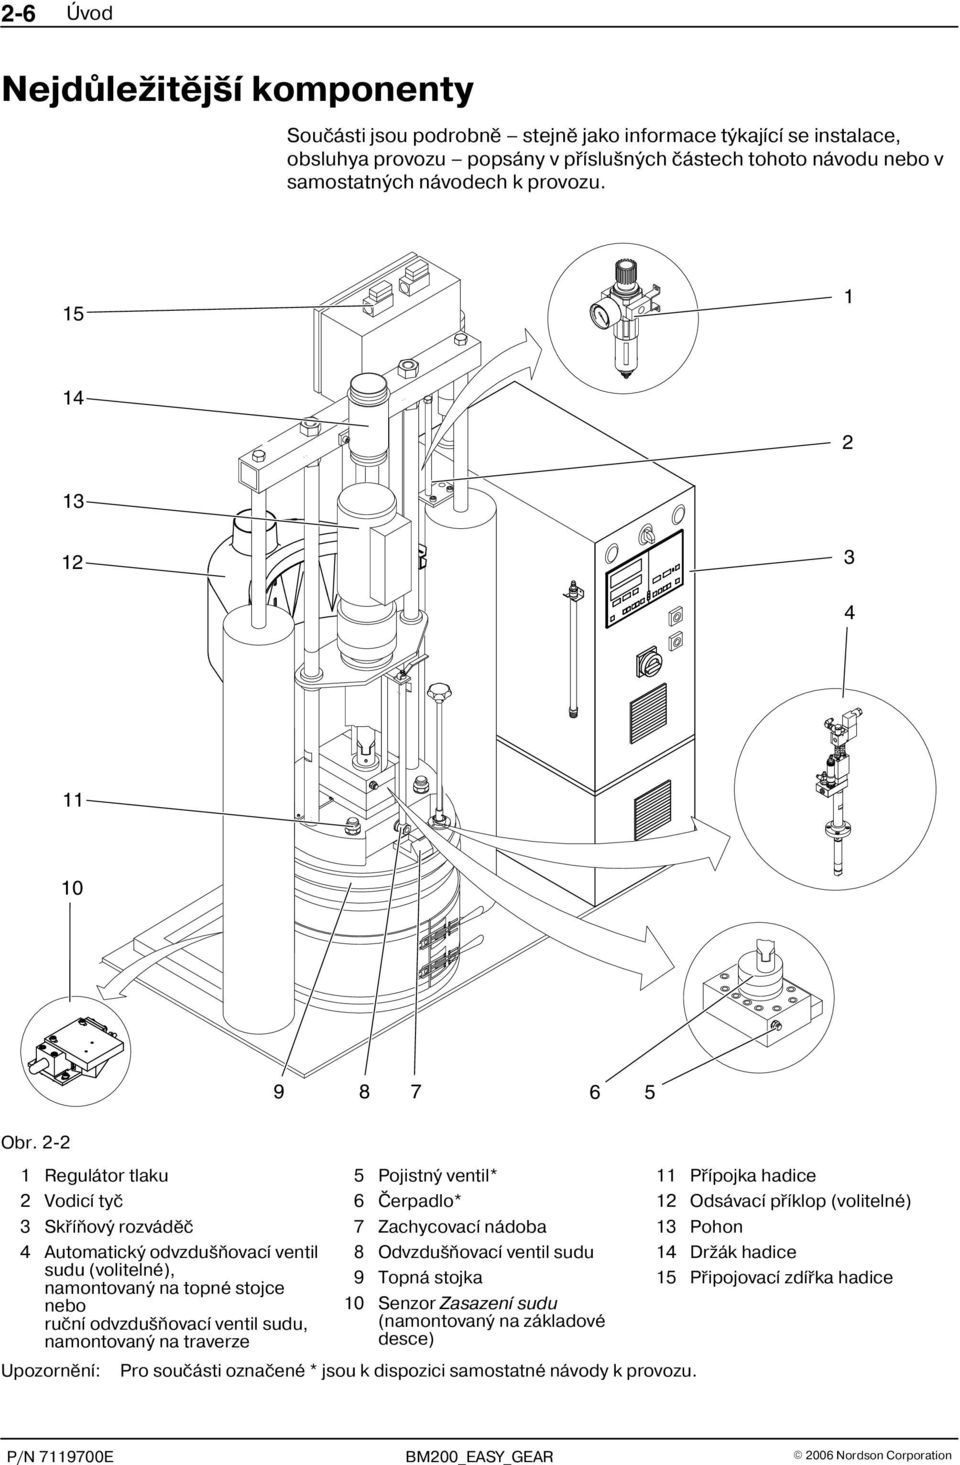 2 2 1 Regulátor tlaku 2 Vodicí tyè 3 Skøíòový rozvádìè 4 Automatický odvzdušòovací ventil sudu (volitelné), namontovaný na topné stojce nebo ruèní odvzdušòovací ventil sudu, namontovaný na